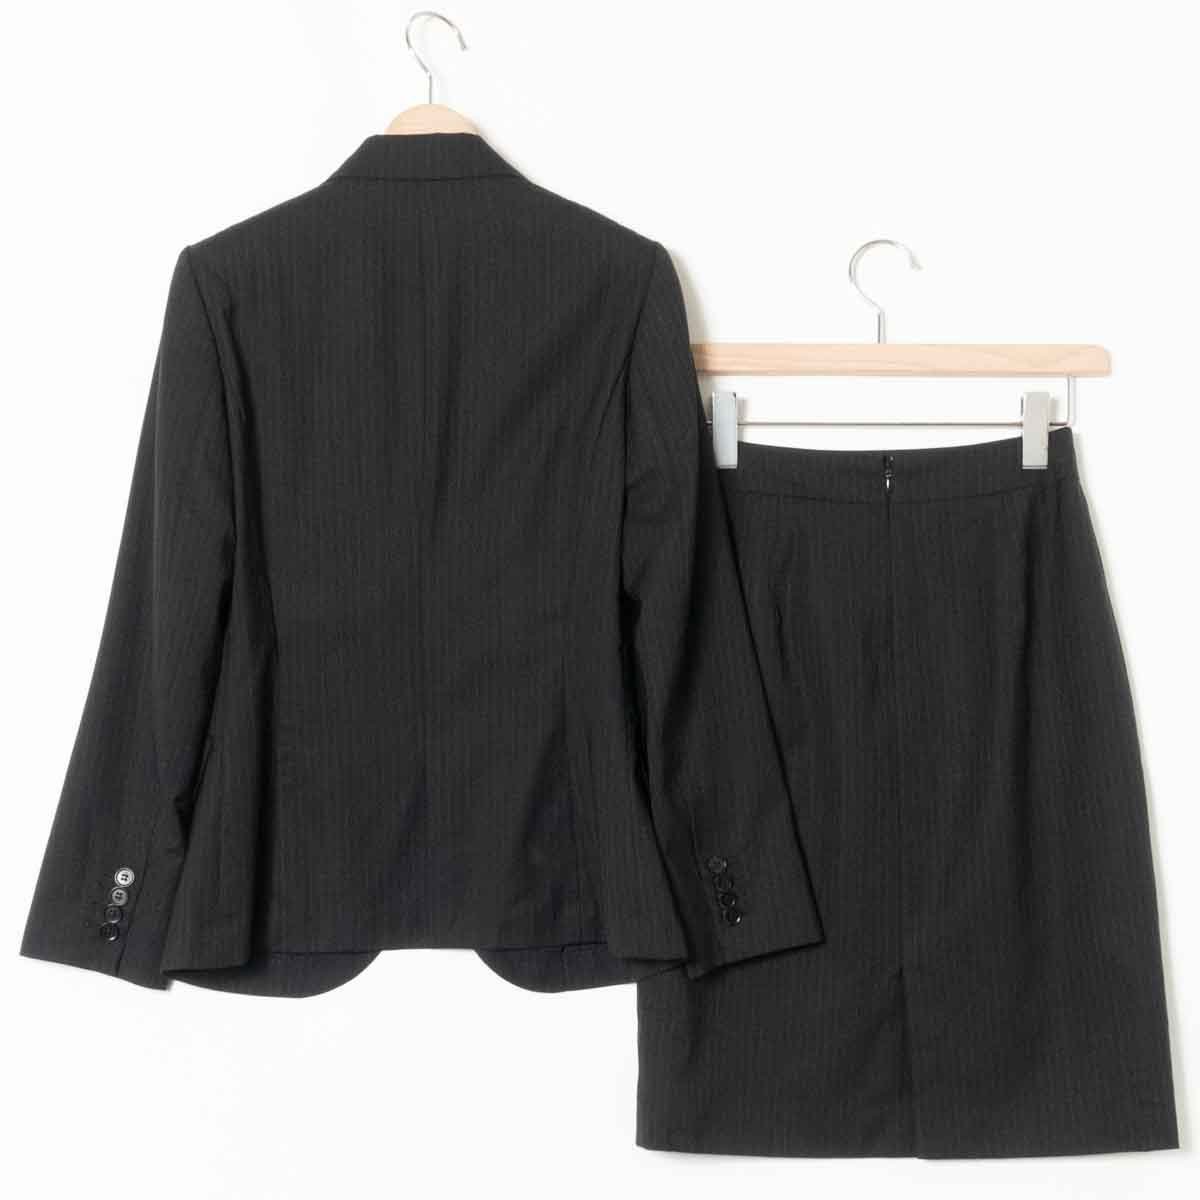 THE SUIT COMPANY ３点セットスーツ セットアップ ザ スーツカンパニー ブラック 黒 ストライプ ジャケット スカート パンツ 薄手 38/36/36_画像10